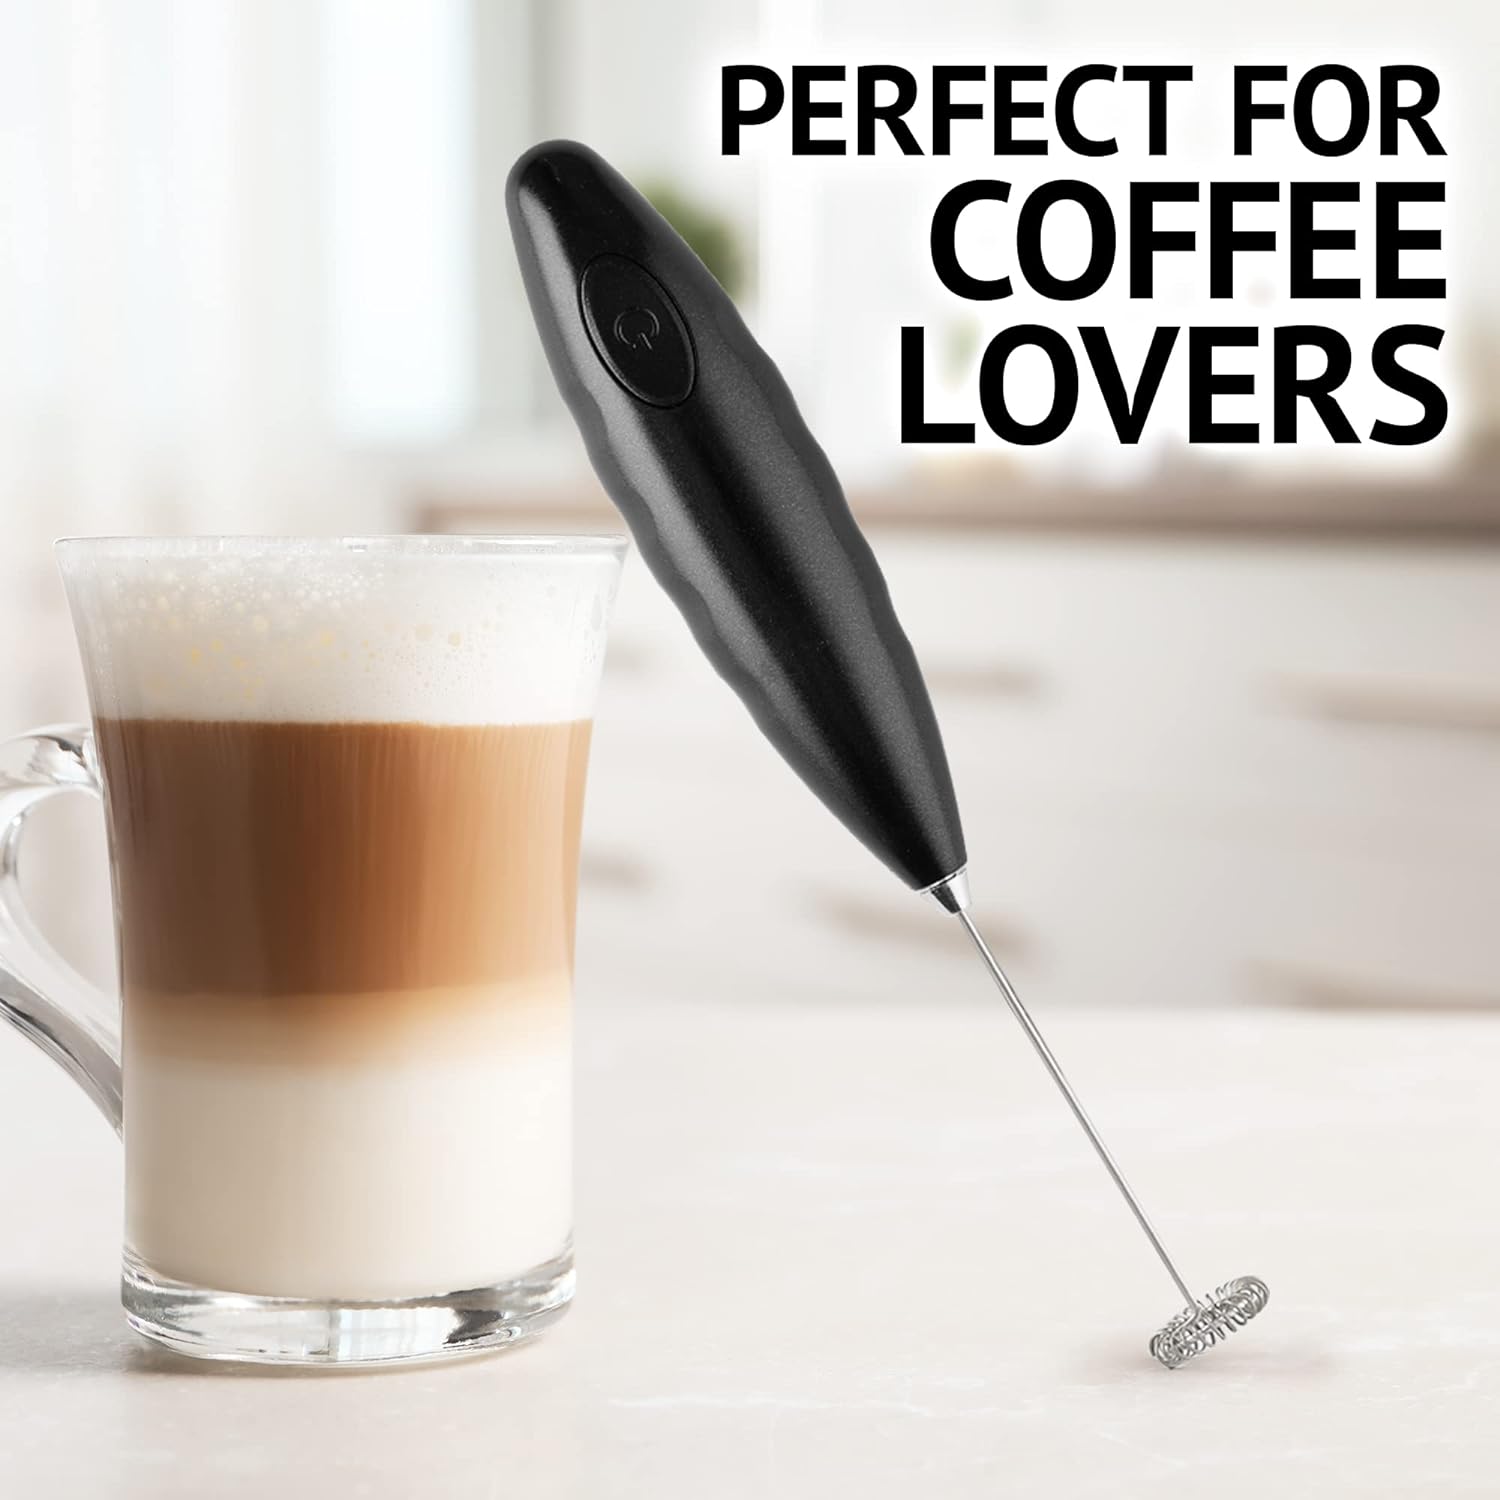 Milk Boss Milk Frother for Coffee - Comfort Grip